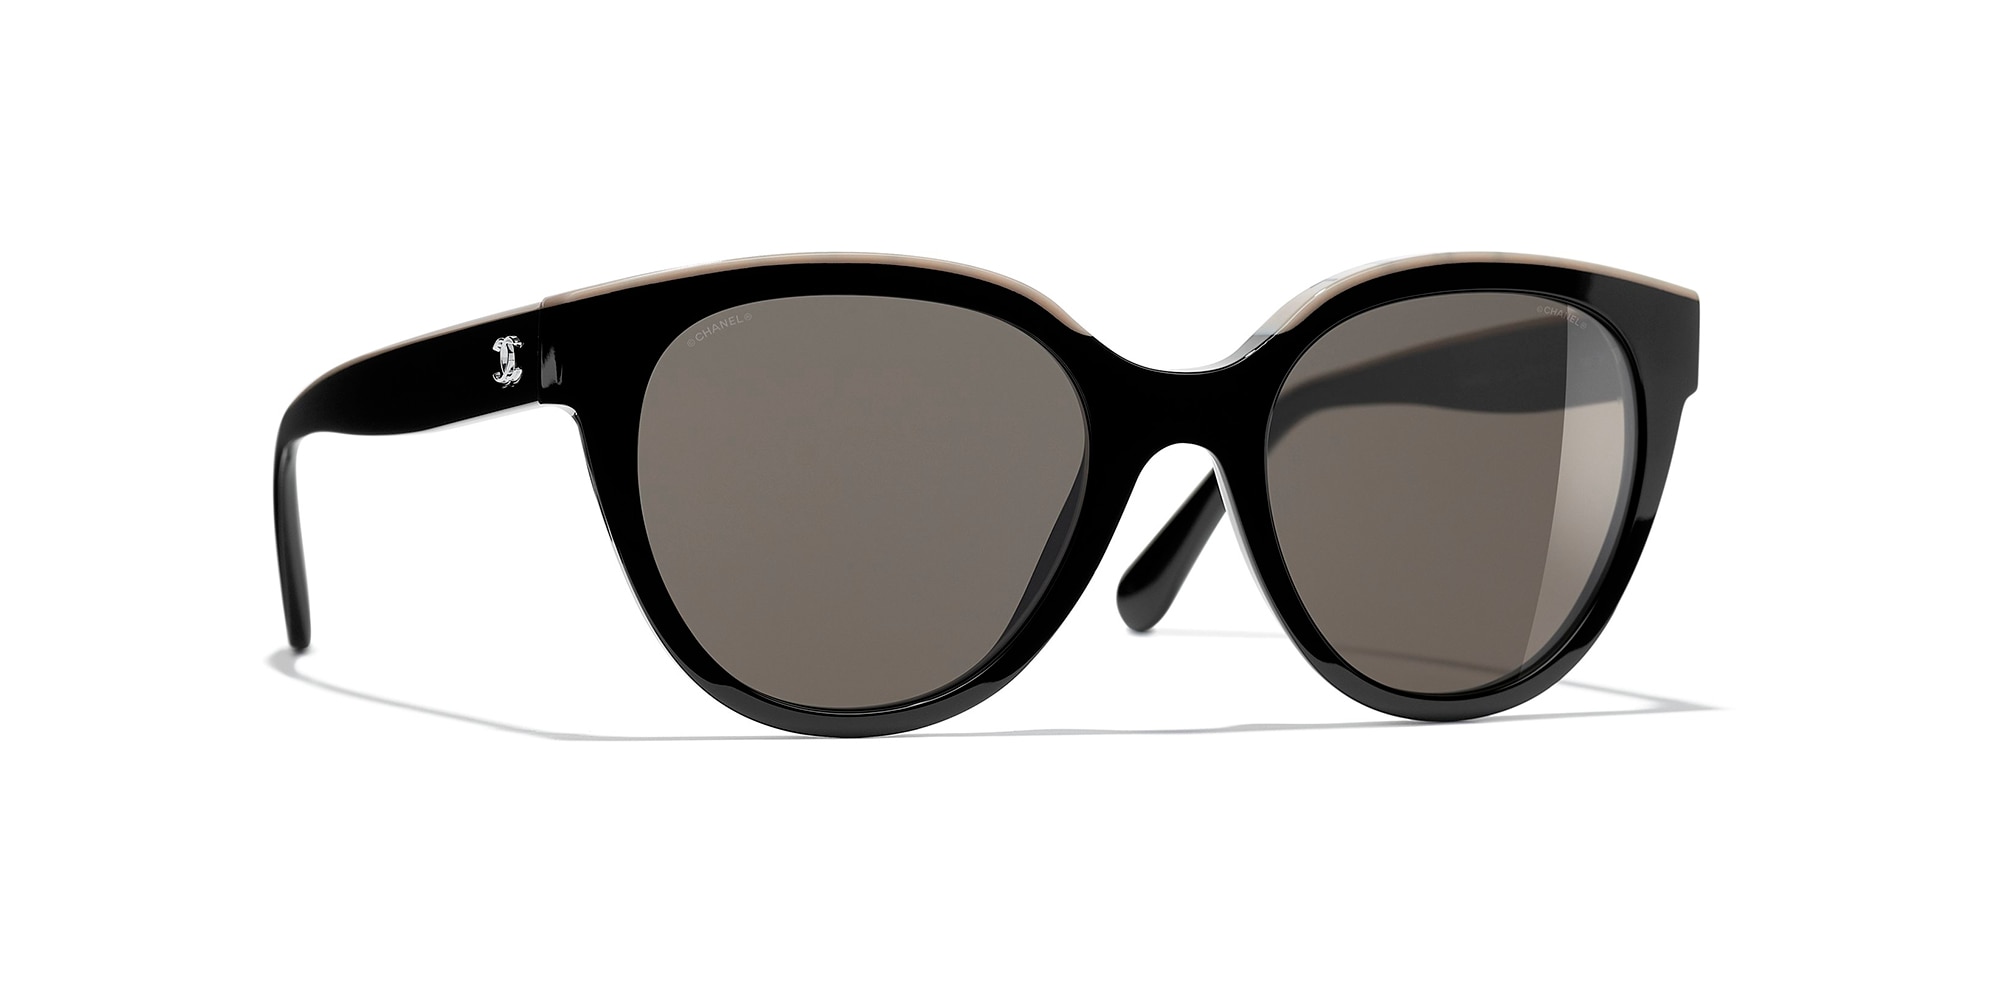 Chanel Glasses  Official Retailer  Optical Experts  Pretavoir